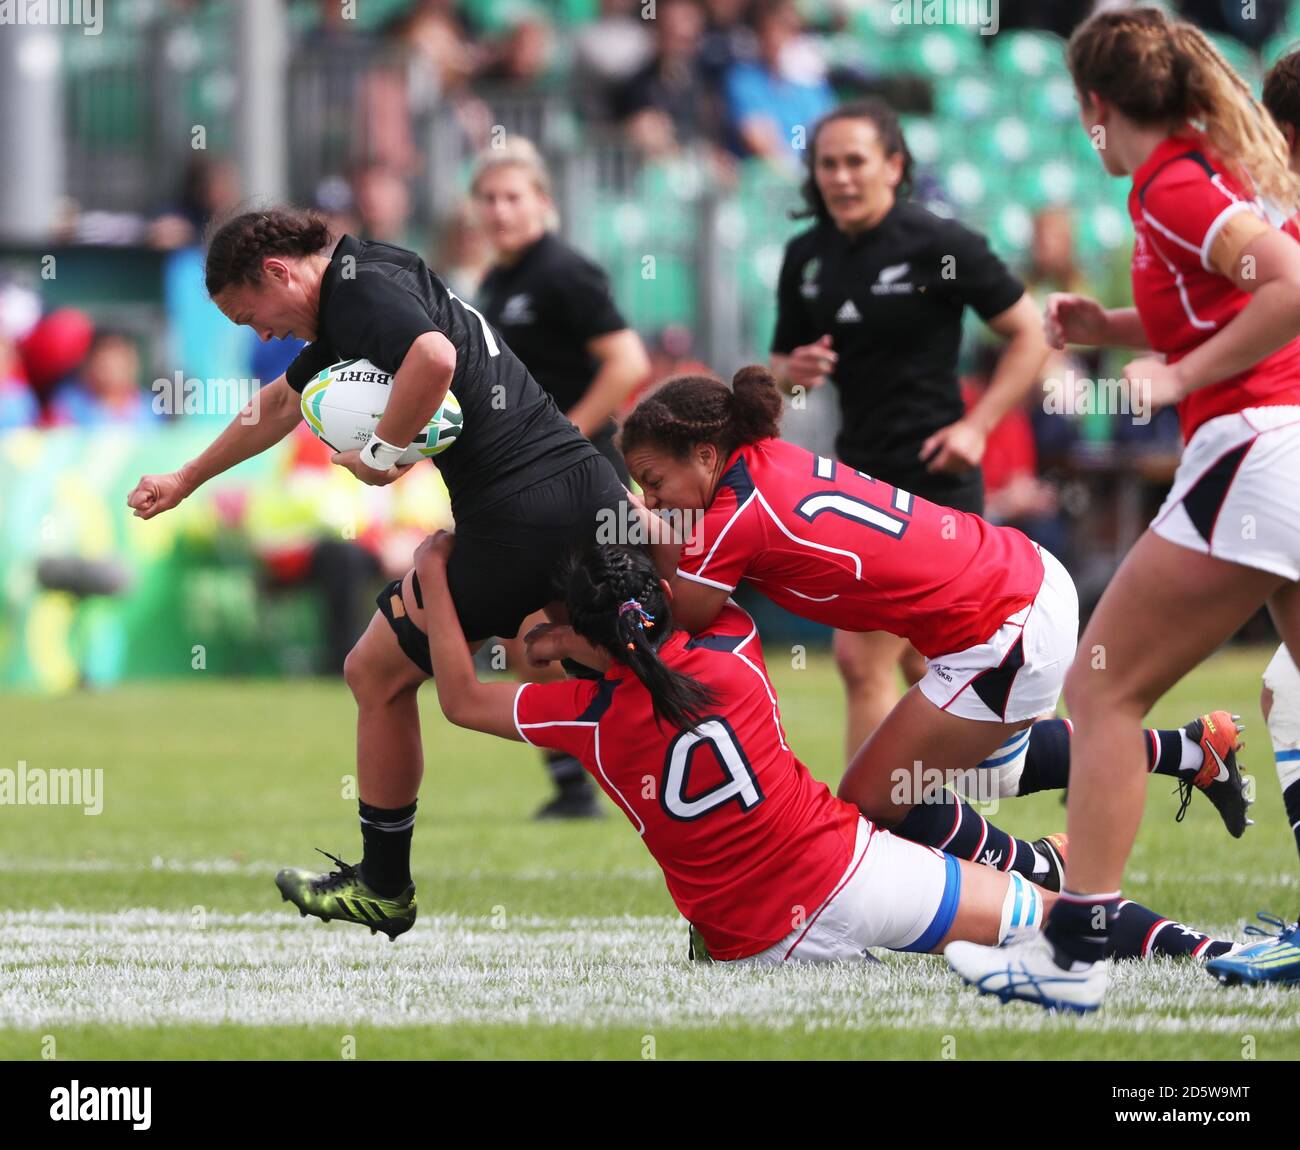 Lesley Ketu en Nouvelle-Zélande est tachef par Chow Mei Nam de Hong Kong et Natasha Olson-Thorne lors de leur match de coupe du monde de rugby féminin au Billings Park. Banque D'Images